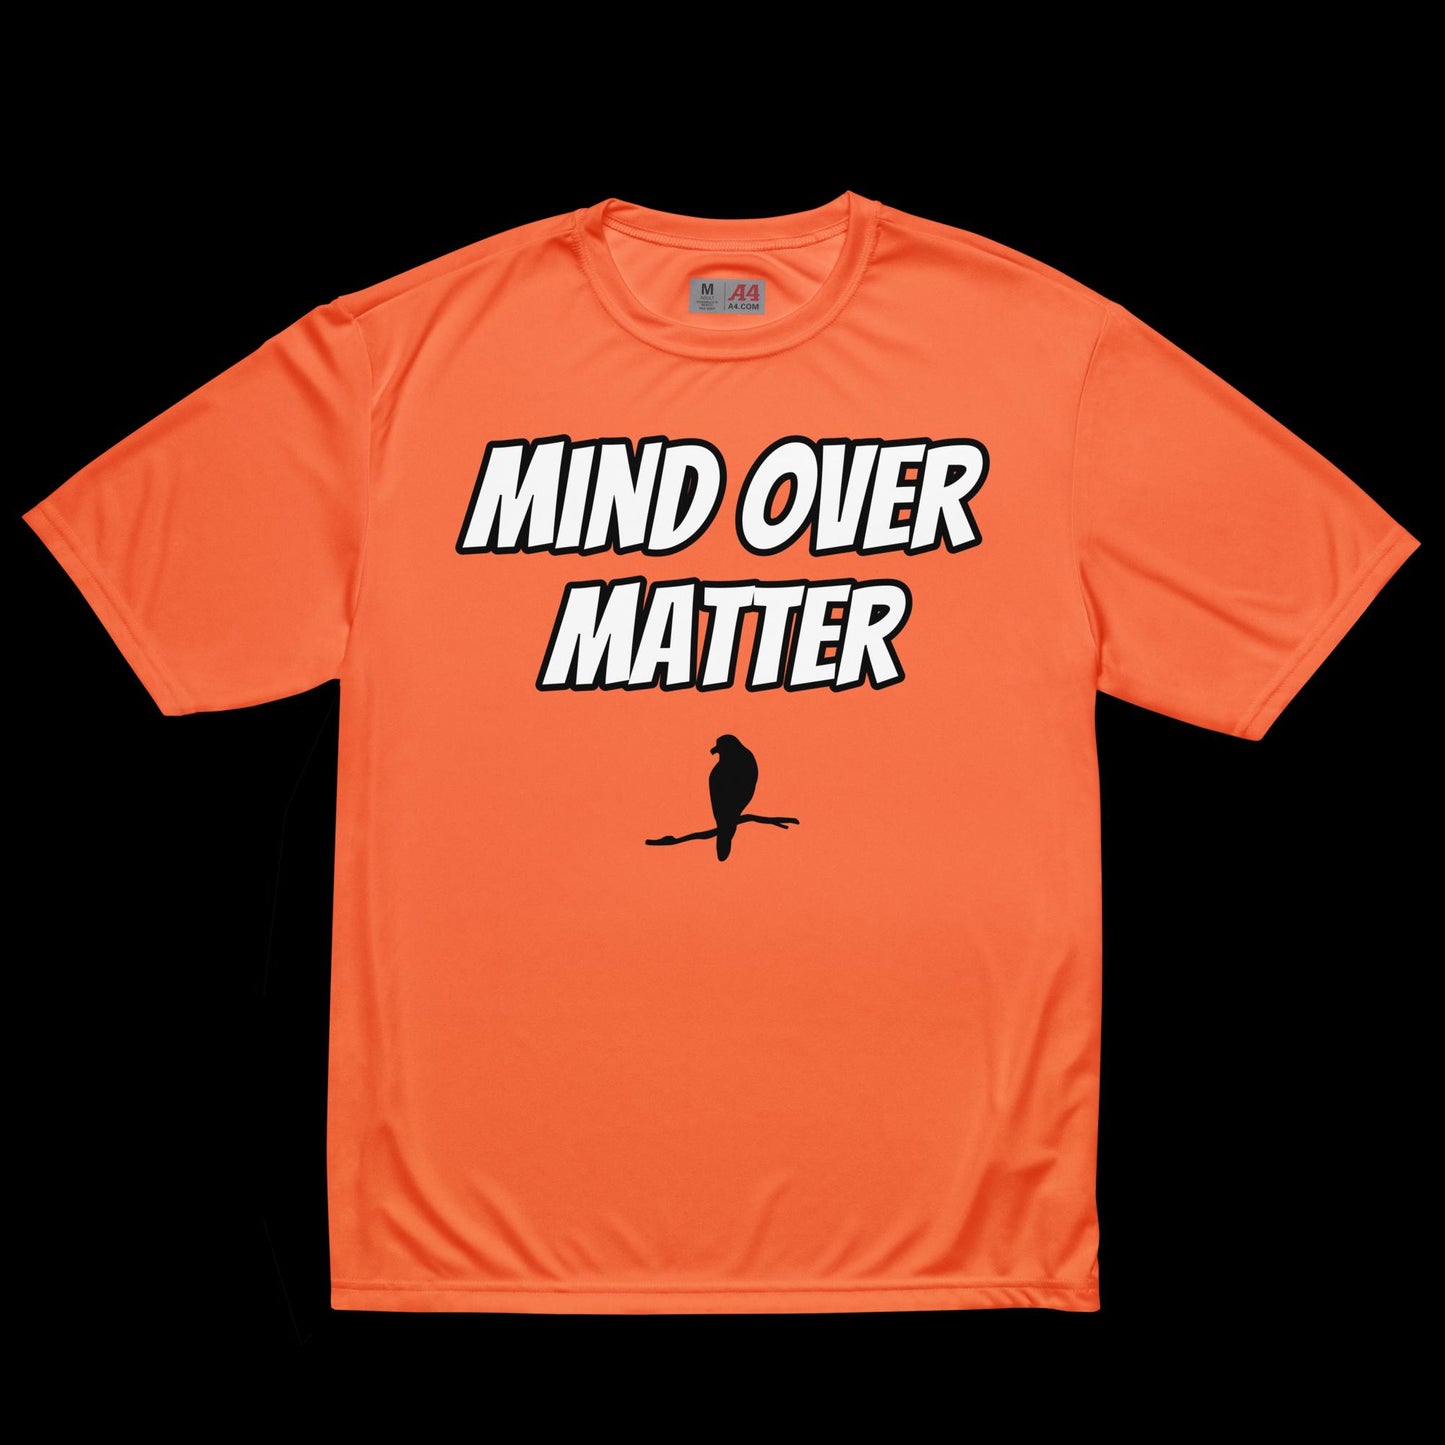 ATD Unisex "Mind Over Matter"  crew neck t-shirt